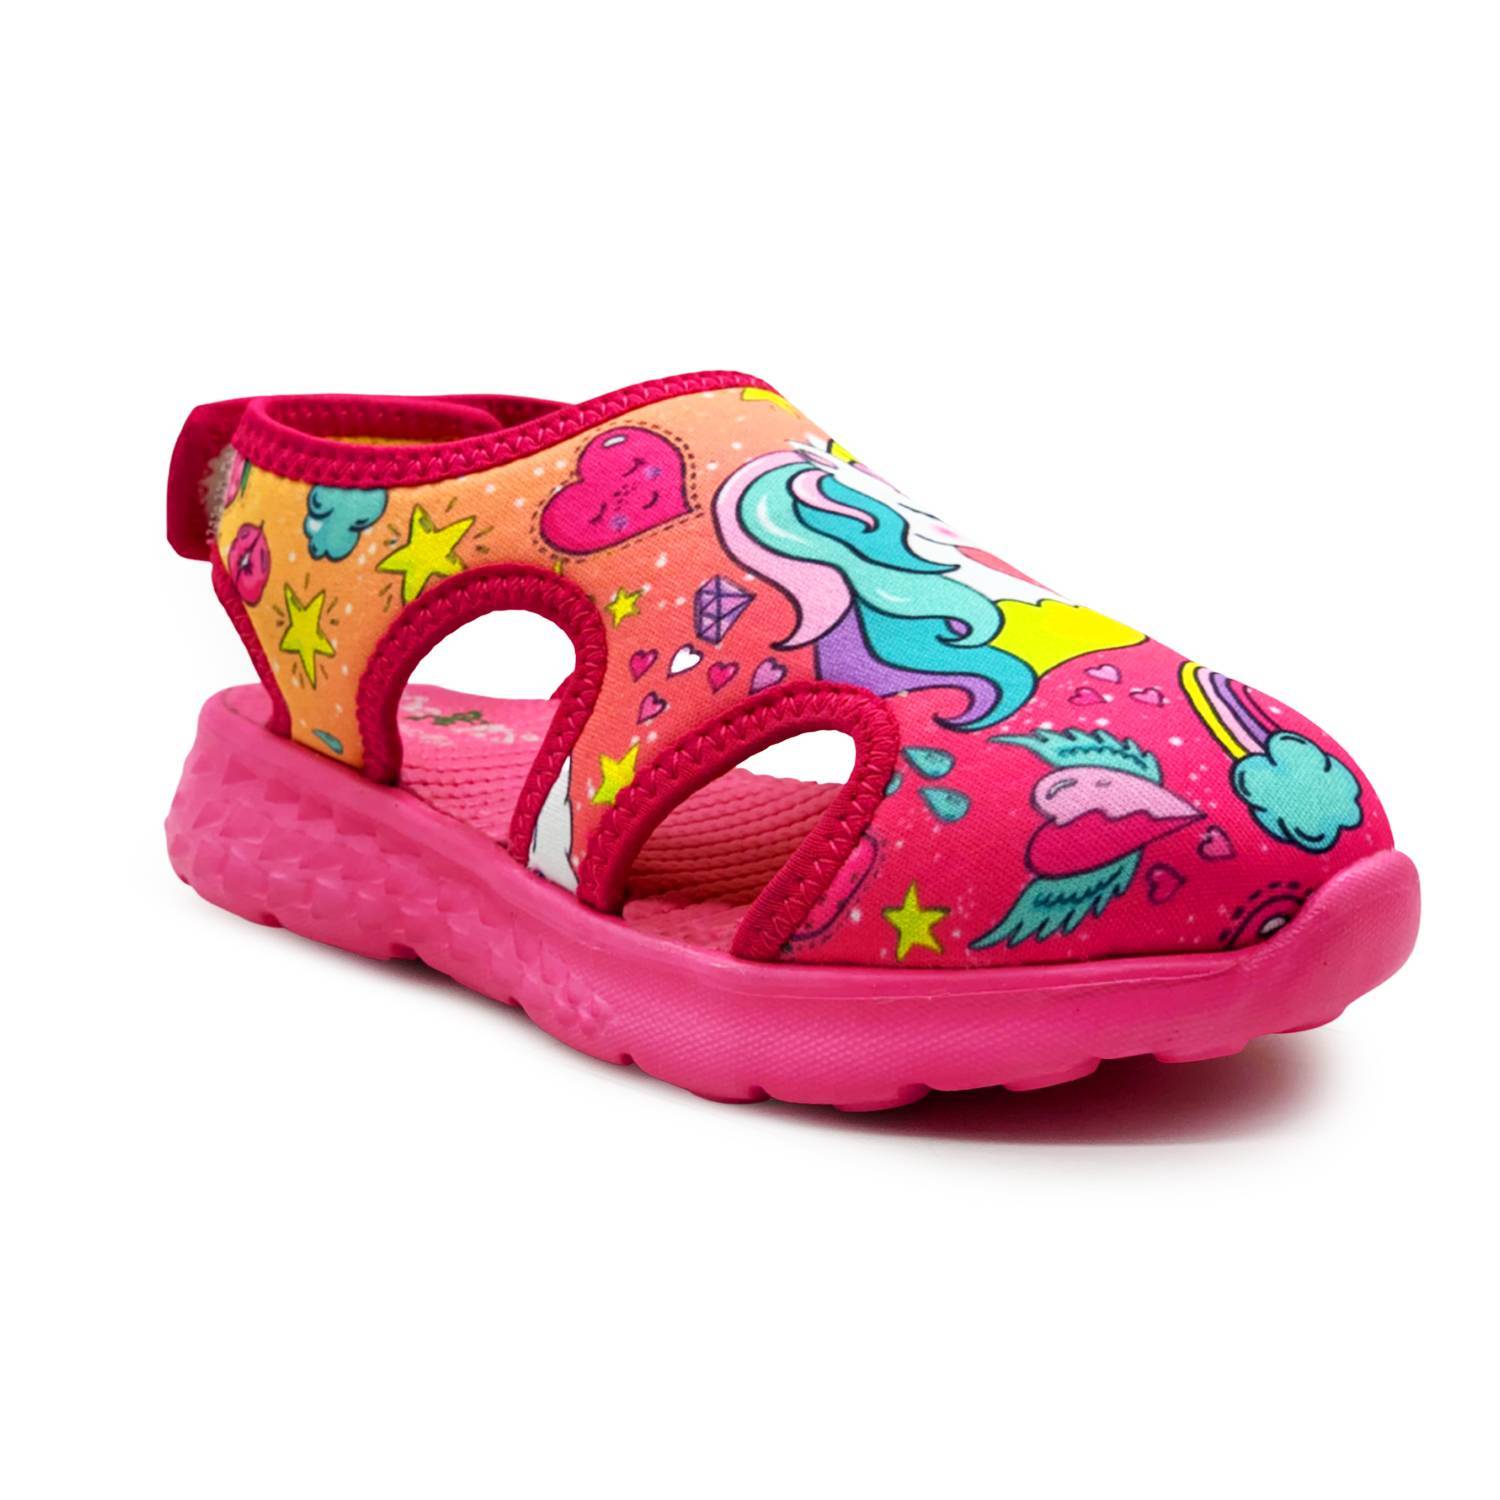 TRAIL - Pink Unicorn Pop-Art Printed Sandals - KazarMax